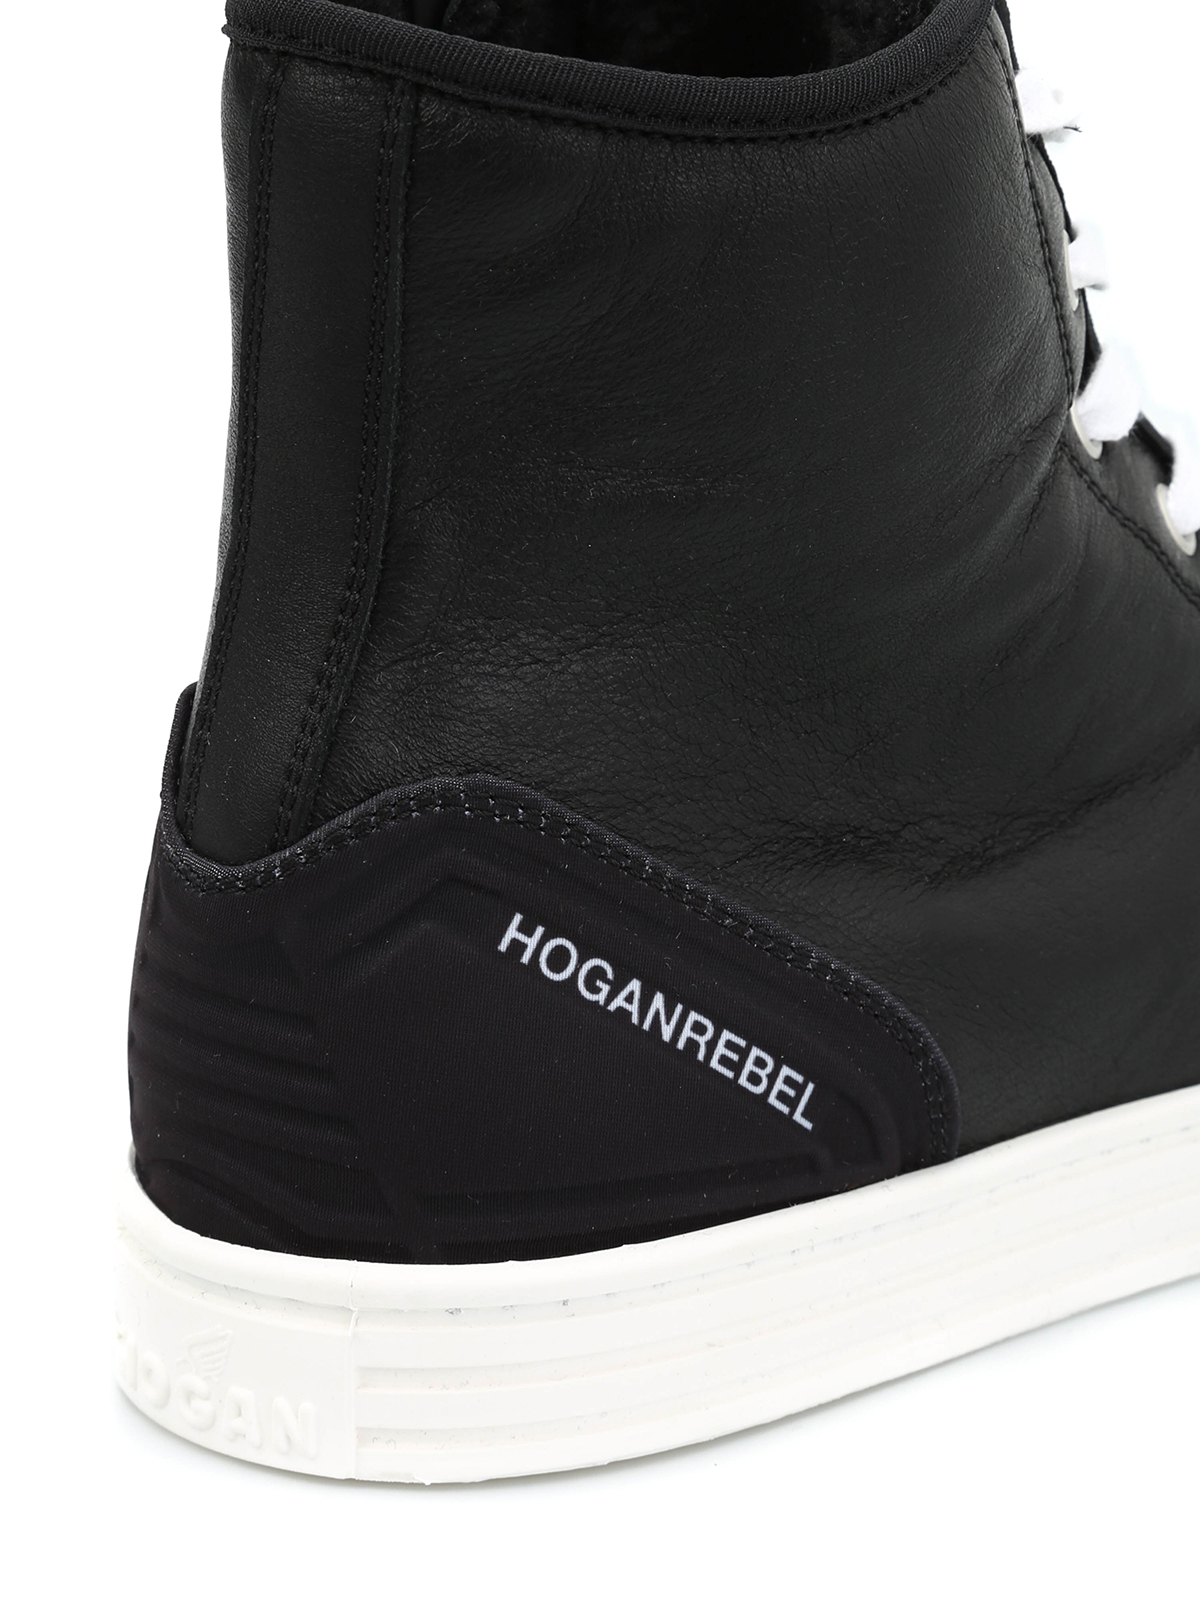 Sneakers Hogan Rebel - Sneaker alte R141 con zip interna ...